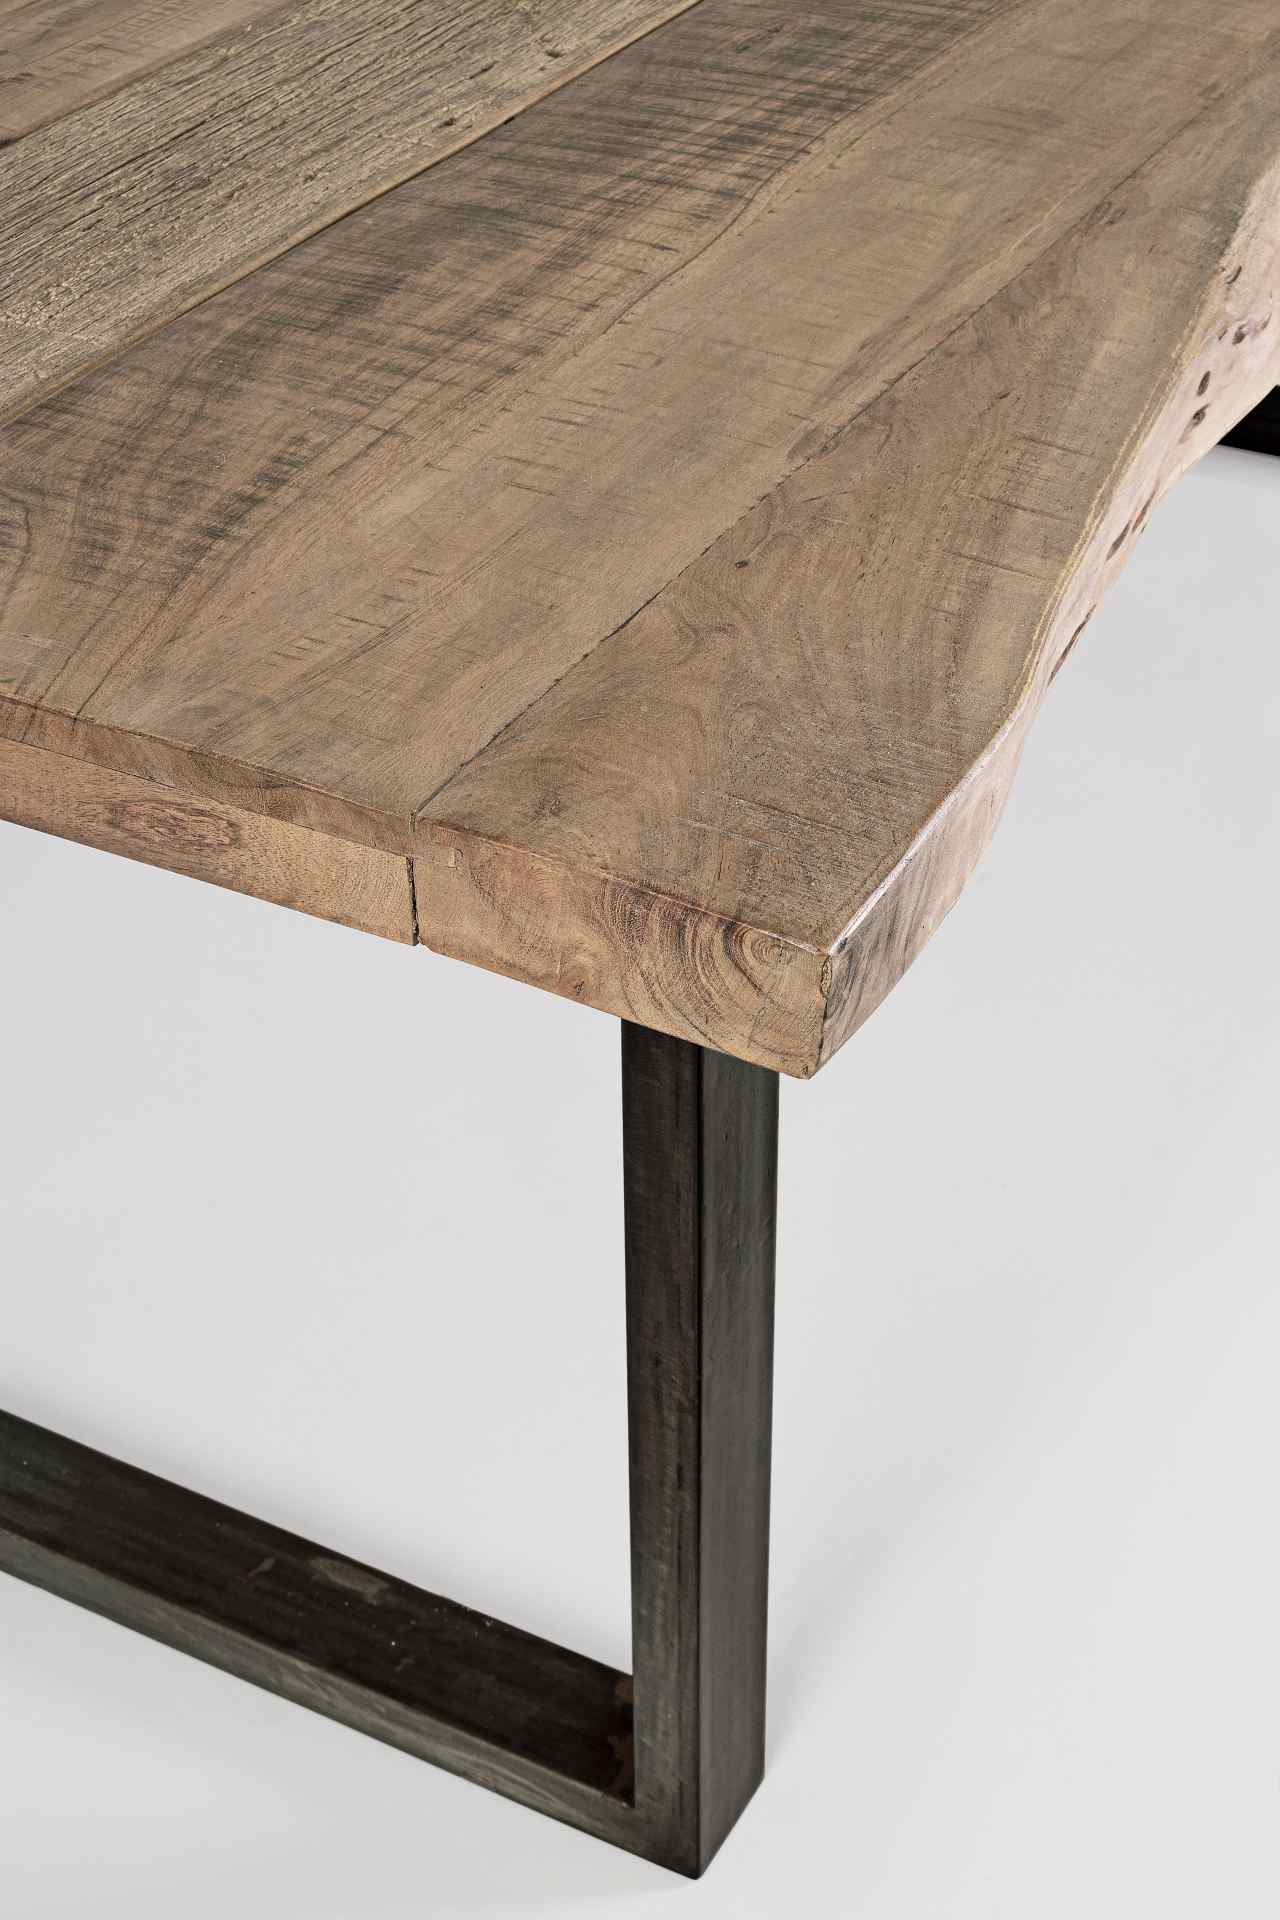 Der Esstisch Nottingham überzeugt mit seinem moderndem Design. Gefertigt wurde er aus Akazienholz, welches einen natürlichen Farbton besitzt. Das Gestell des Tisches ist aus Metall und ist in eine schwarze Farbe. Der Tisch besitzt eine Breite von 220 cm.